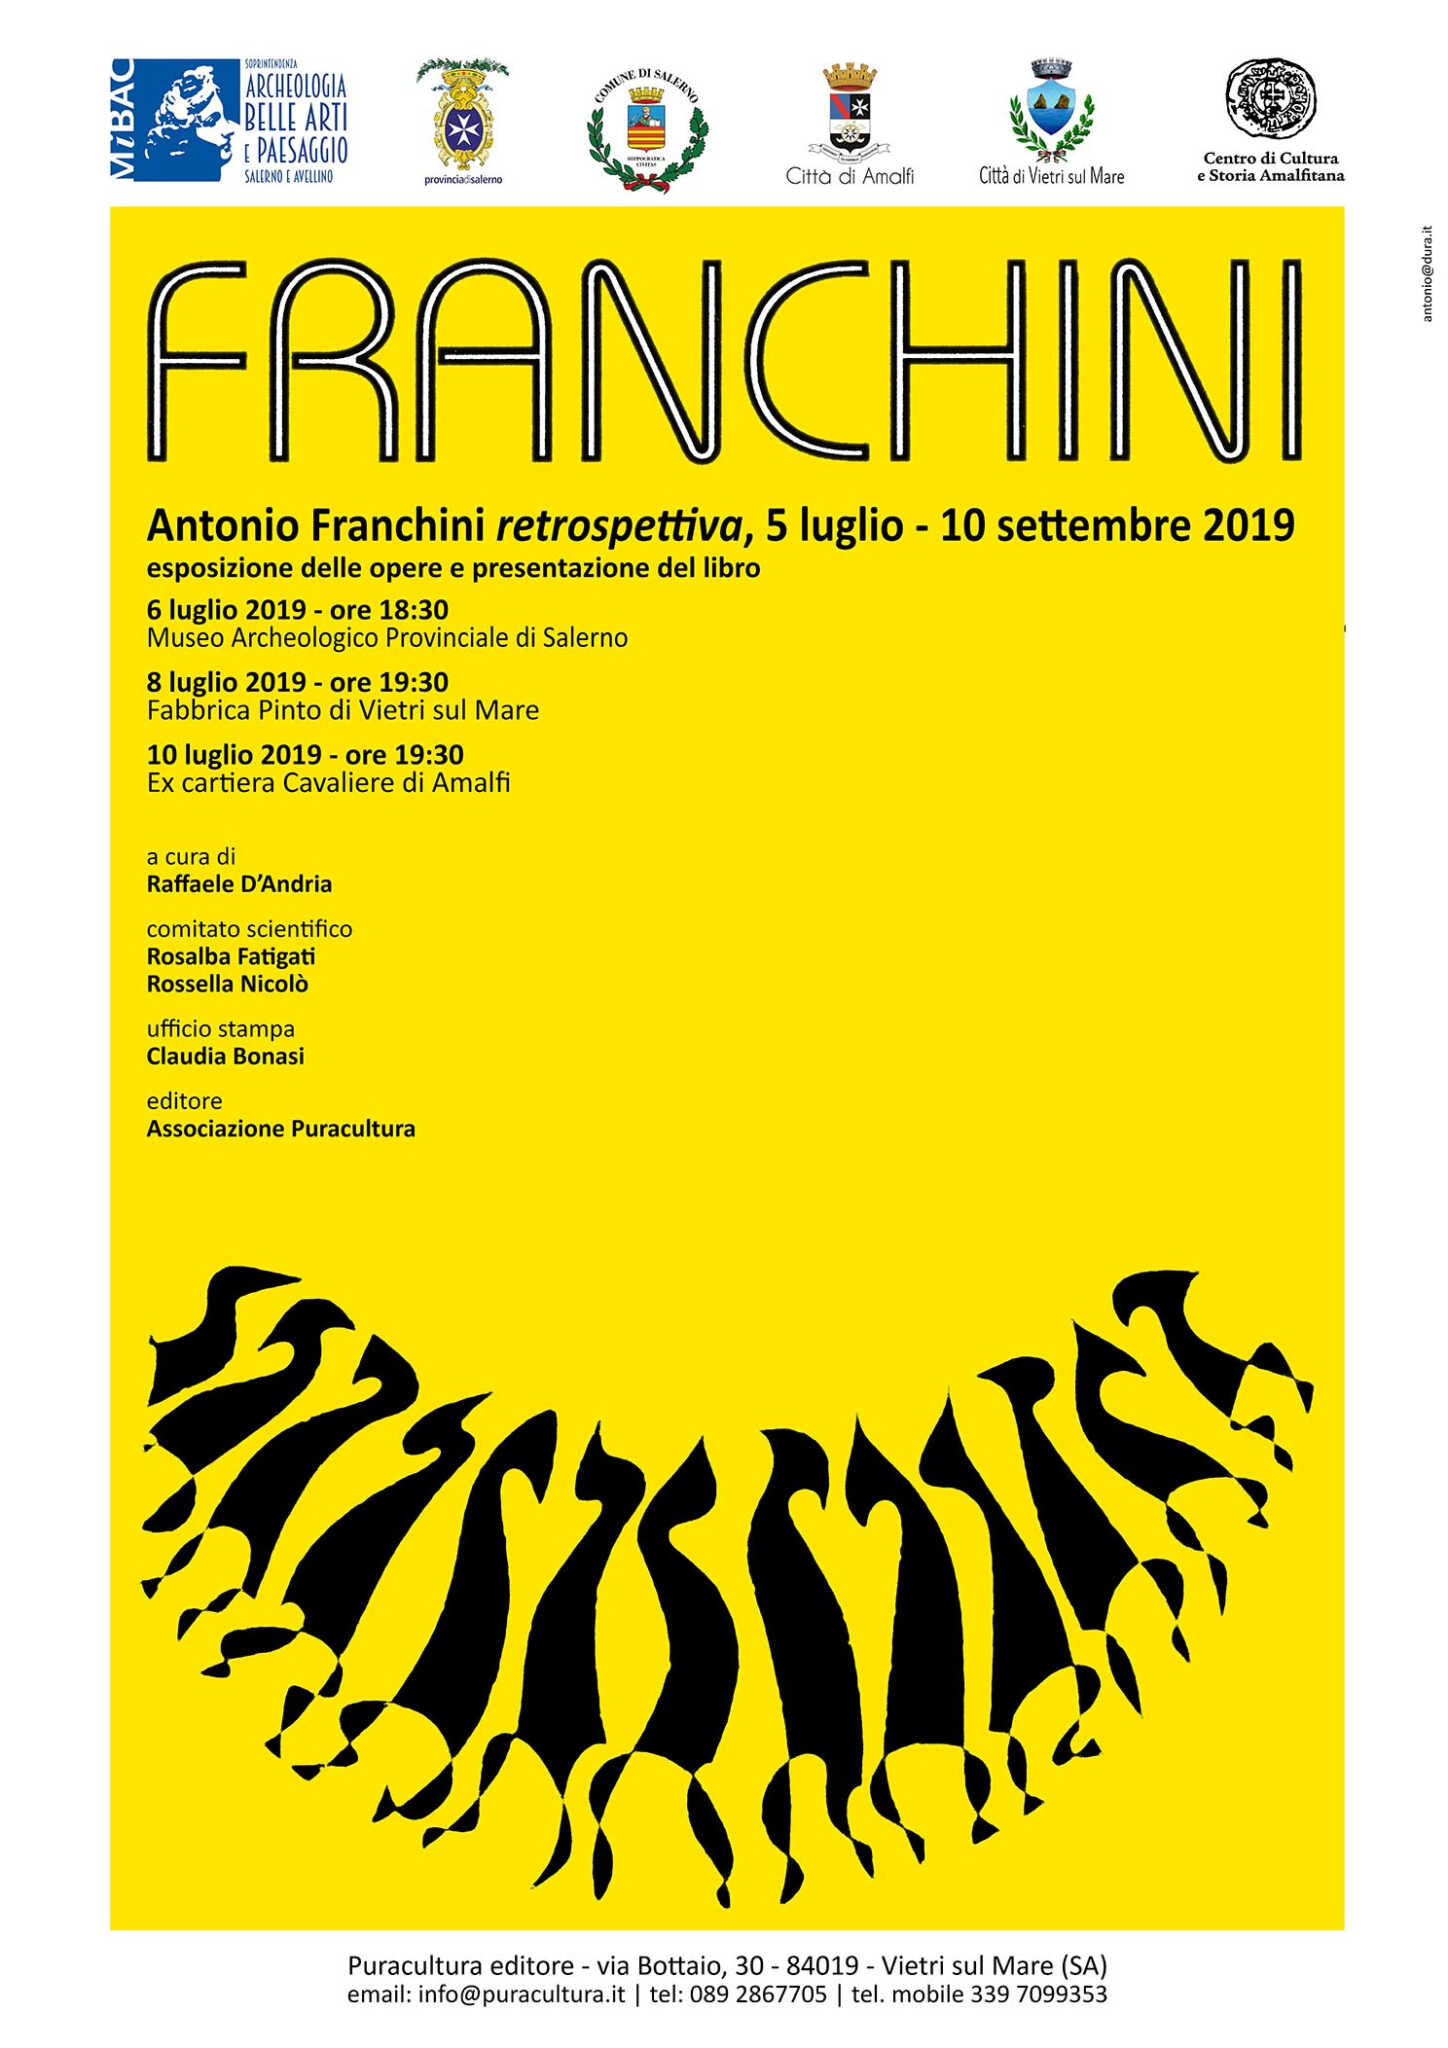 Antonio Franchini, retrospettiva. Tre esposizioni: Salerno, Vietri sul Mare, Amalfi